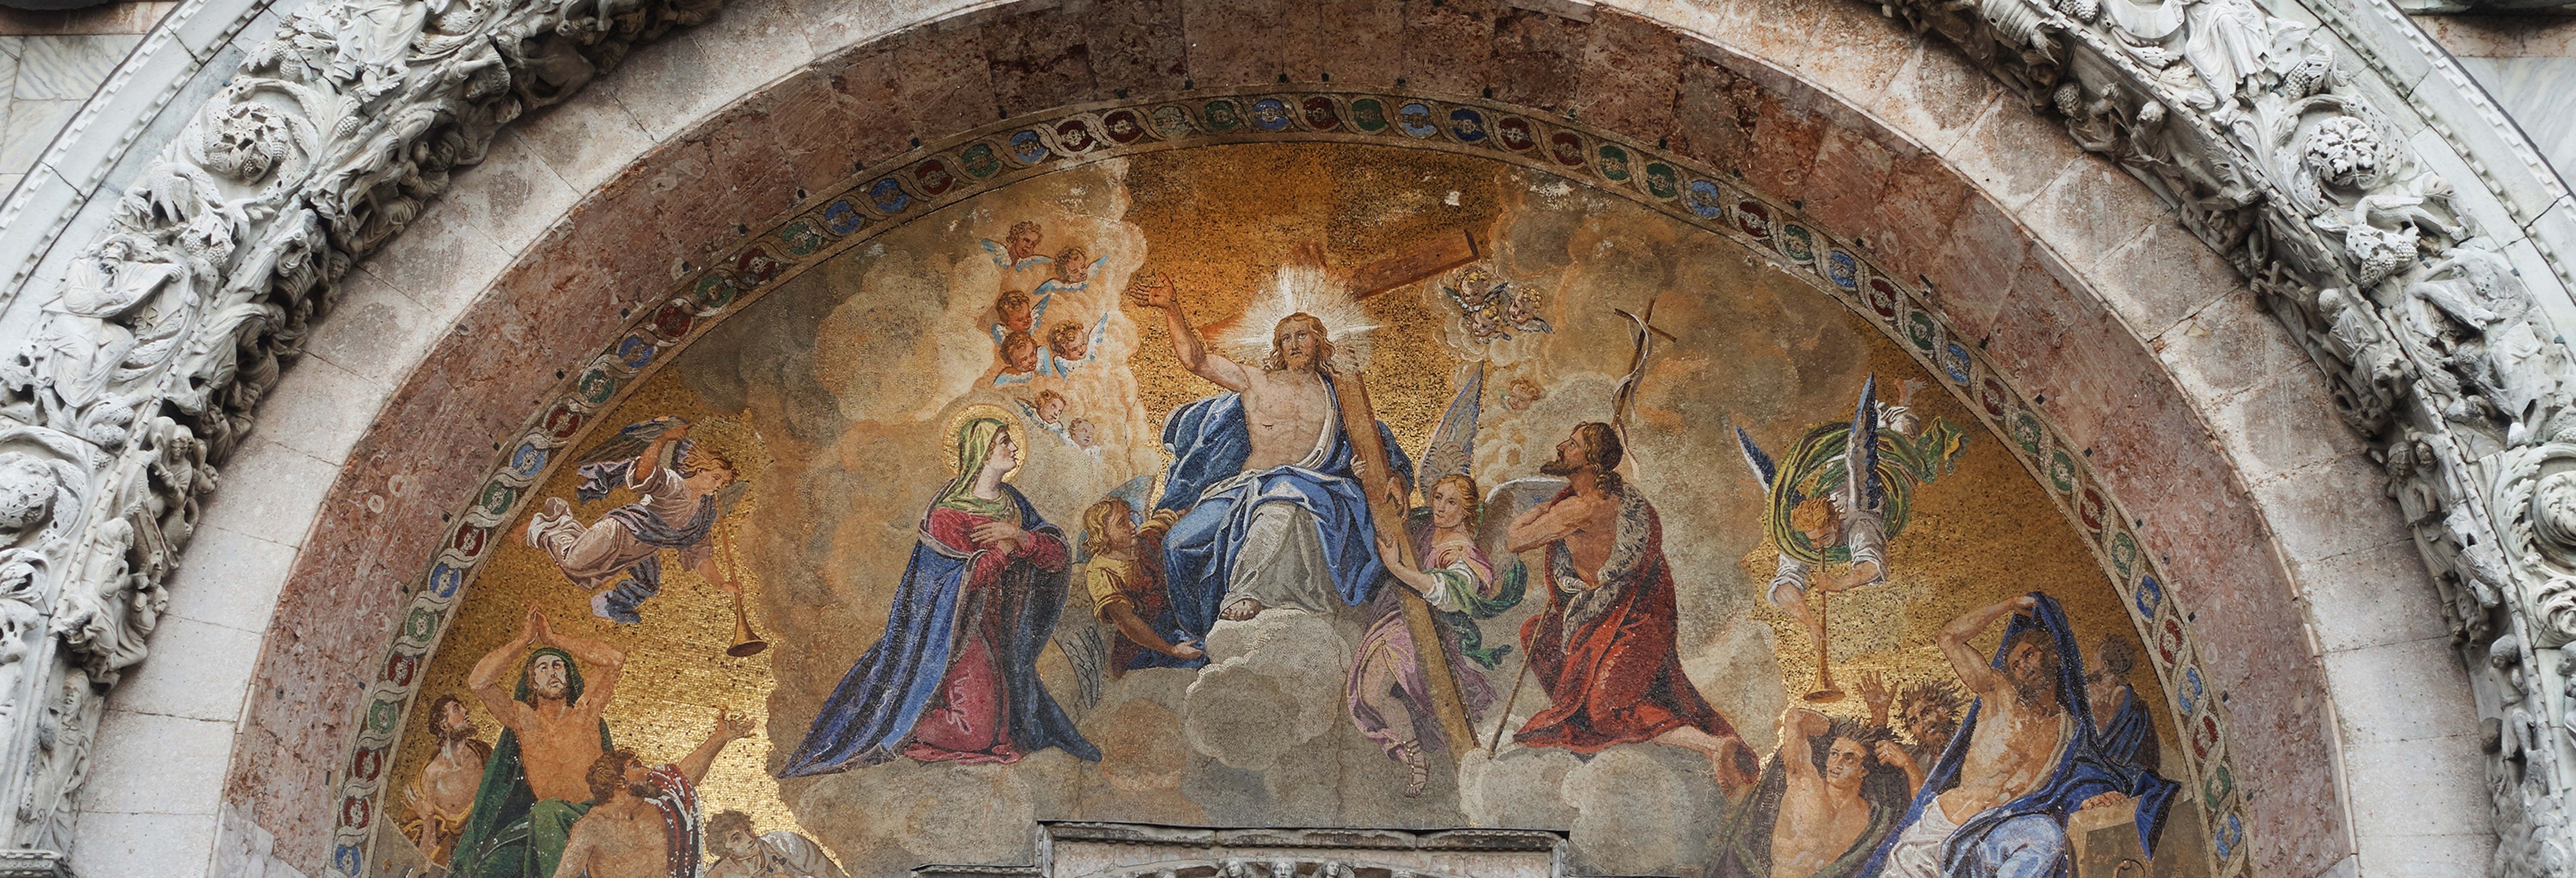 Visita guiada por la Basílica de San Marcos